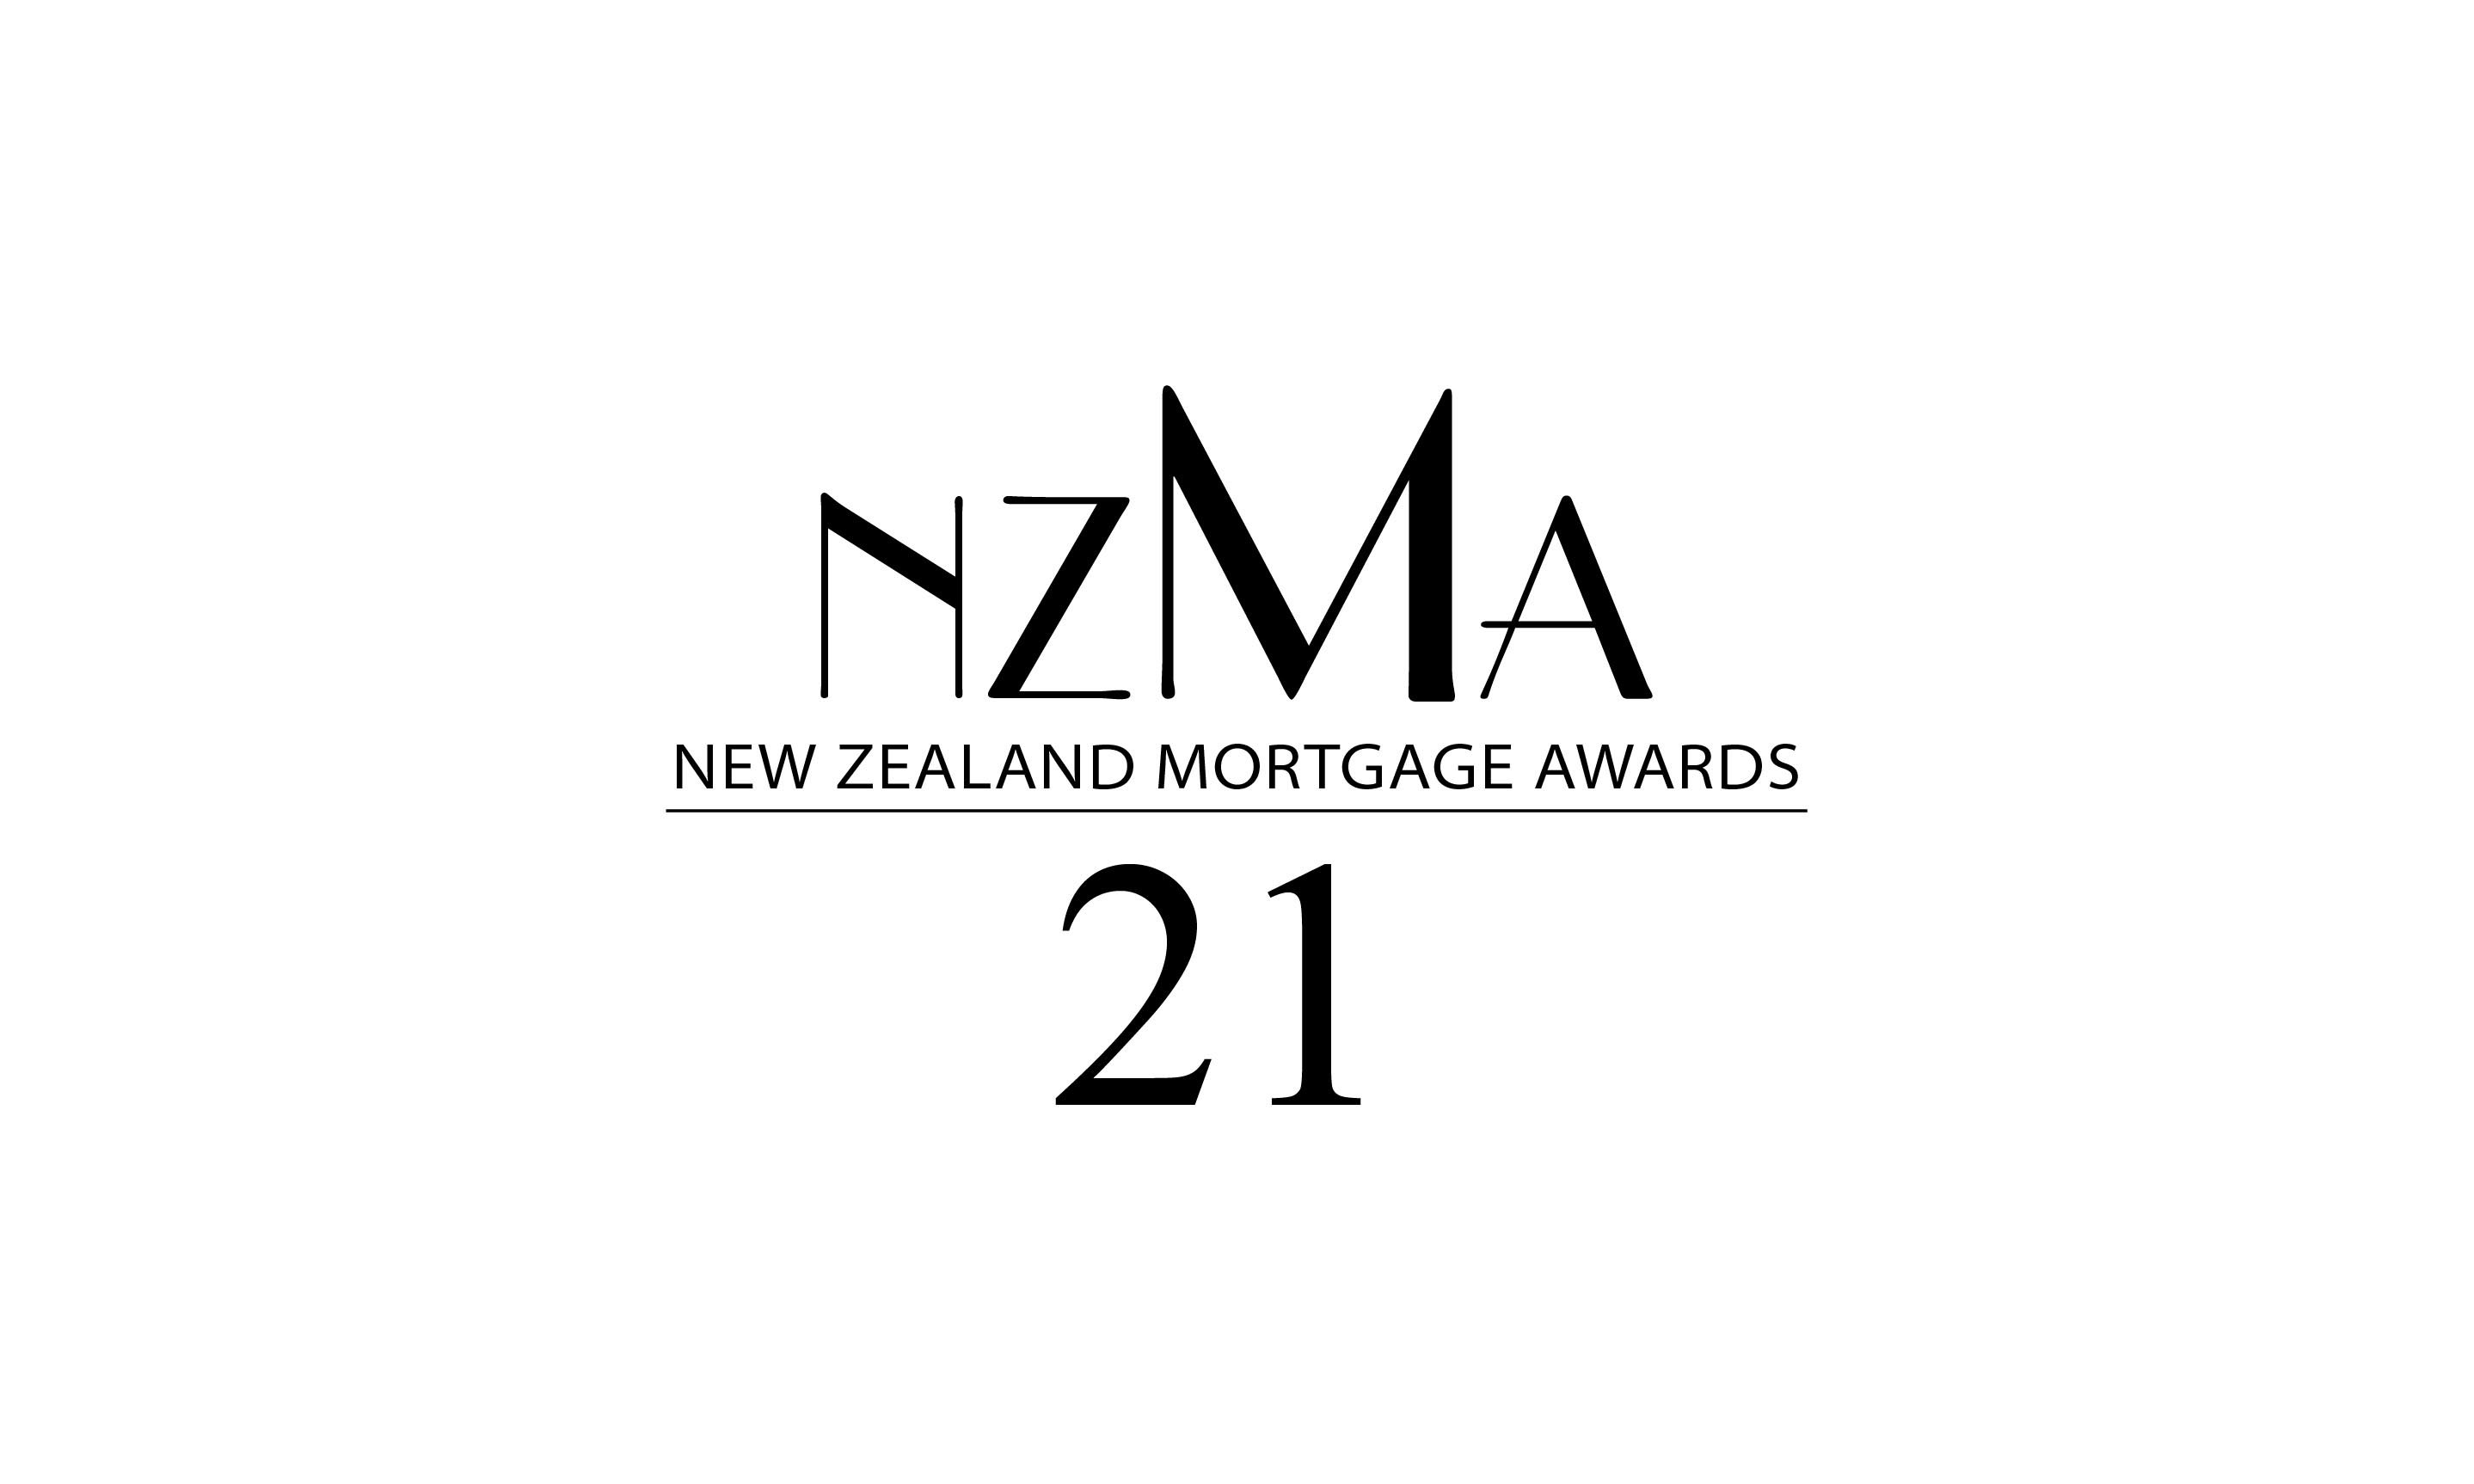 New Zealand Mortgage Awards 2021